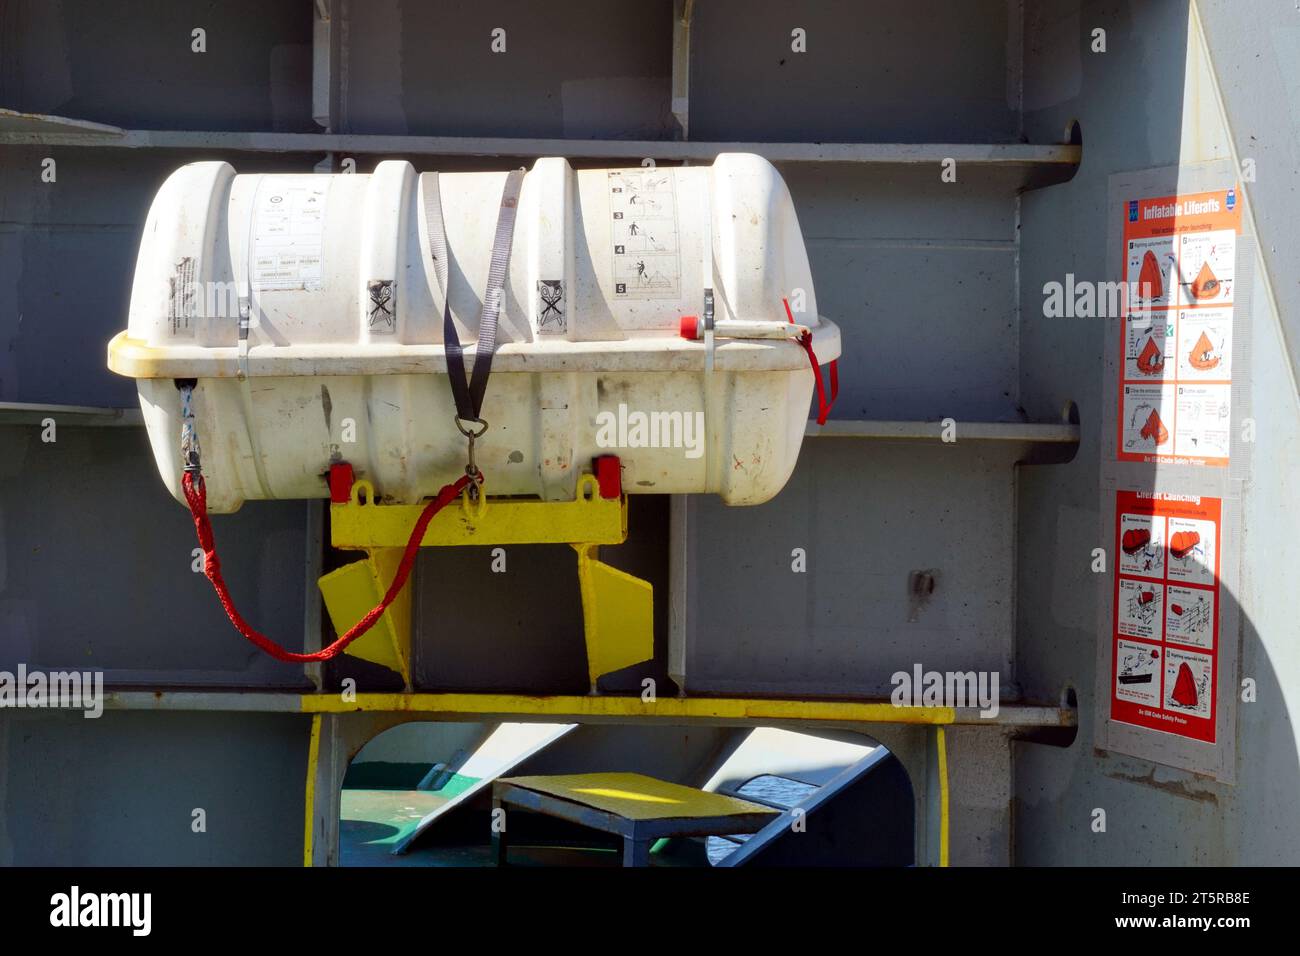 Weißes Rettungsfloß ohne hydrostatische Freisetzung in der vorderen Station des Containerschiffs gesichert, einsatzbereit in Notsituationen. Stockfoto